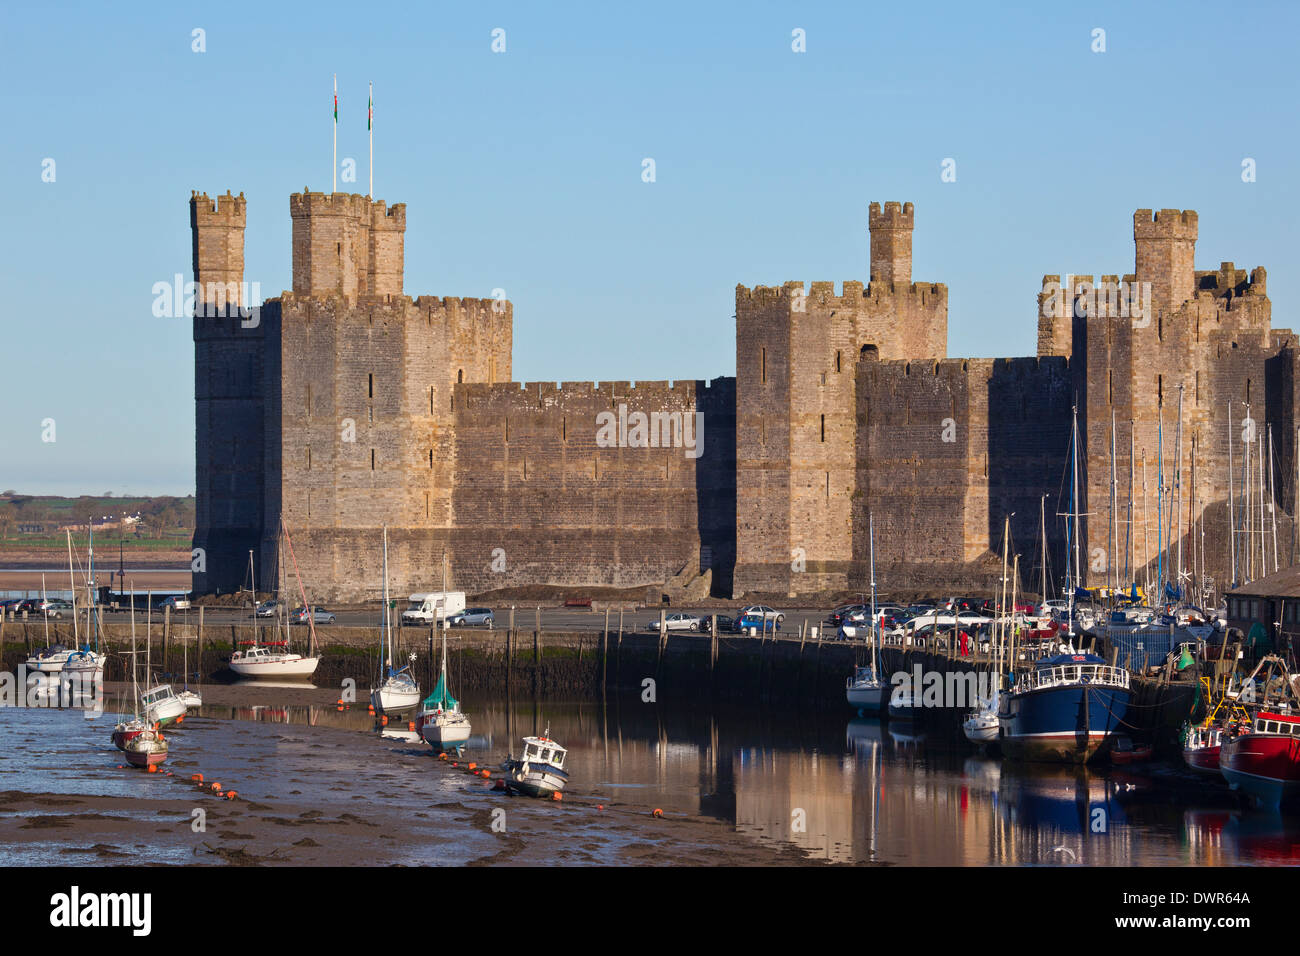 Caernarfon Castle in the town of Caernarfon in Gwynedd on the north coast of Wales in the United Kingdom Stock Photo